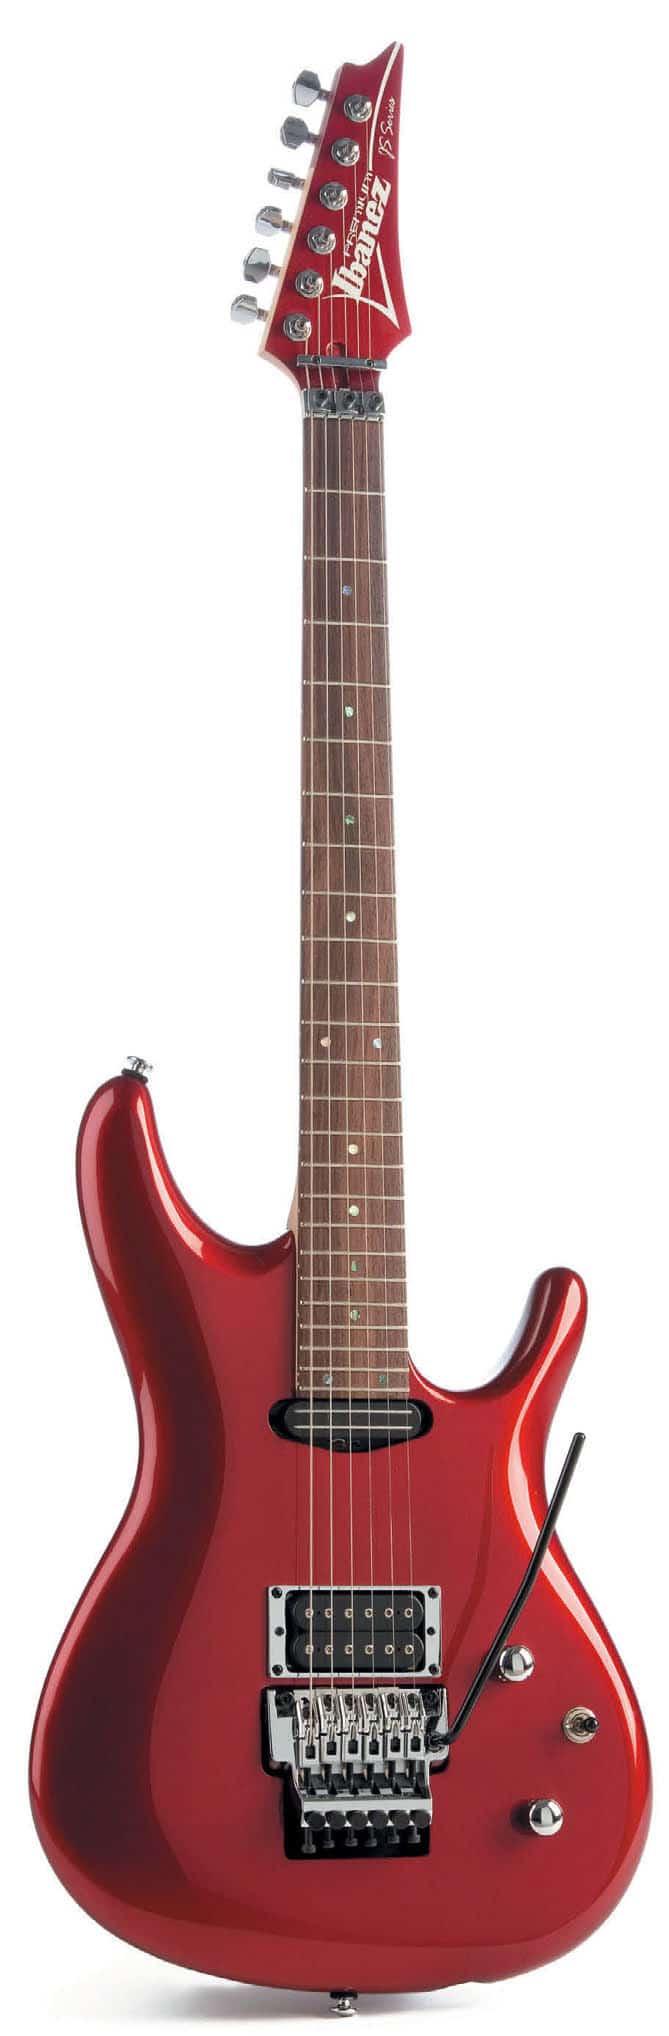 E-Gitarre von Ibanez, rot, stehend